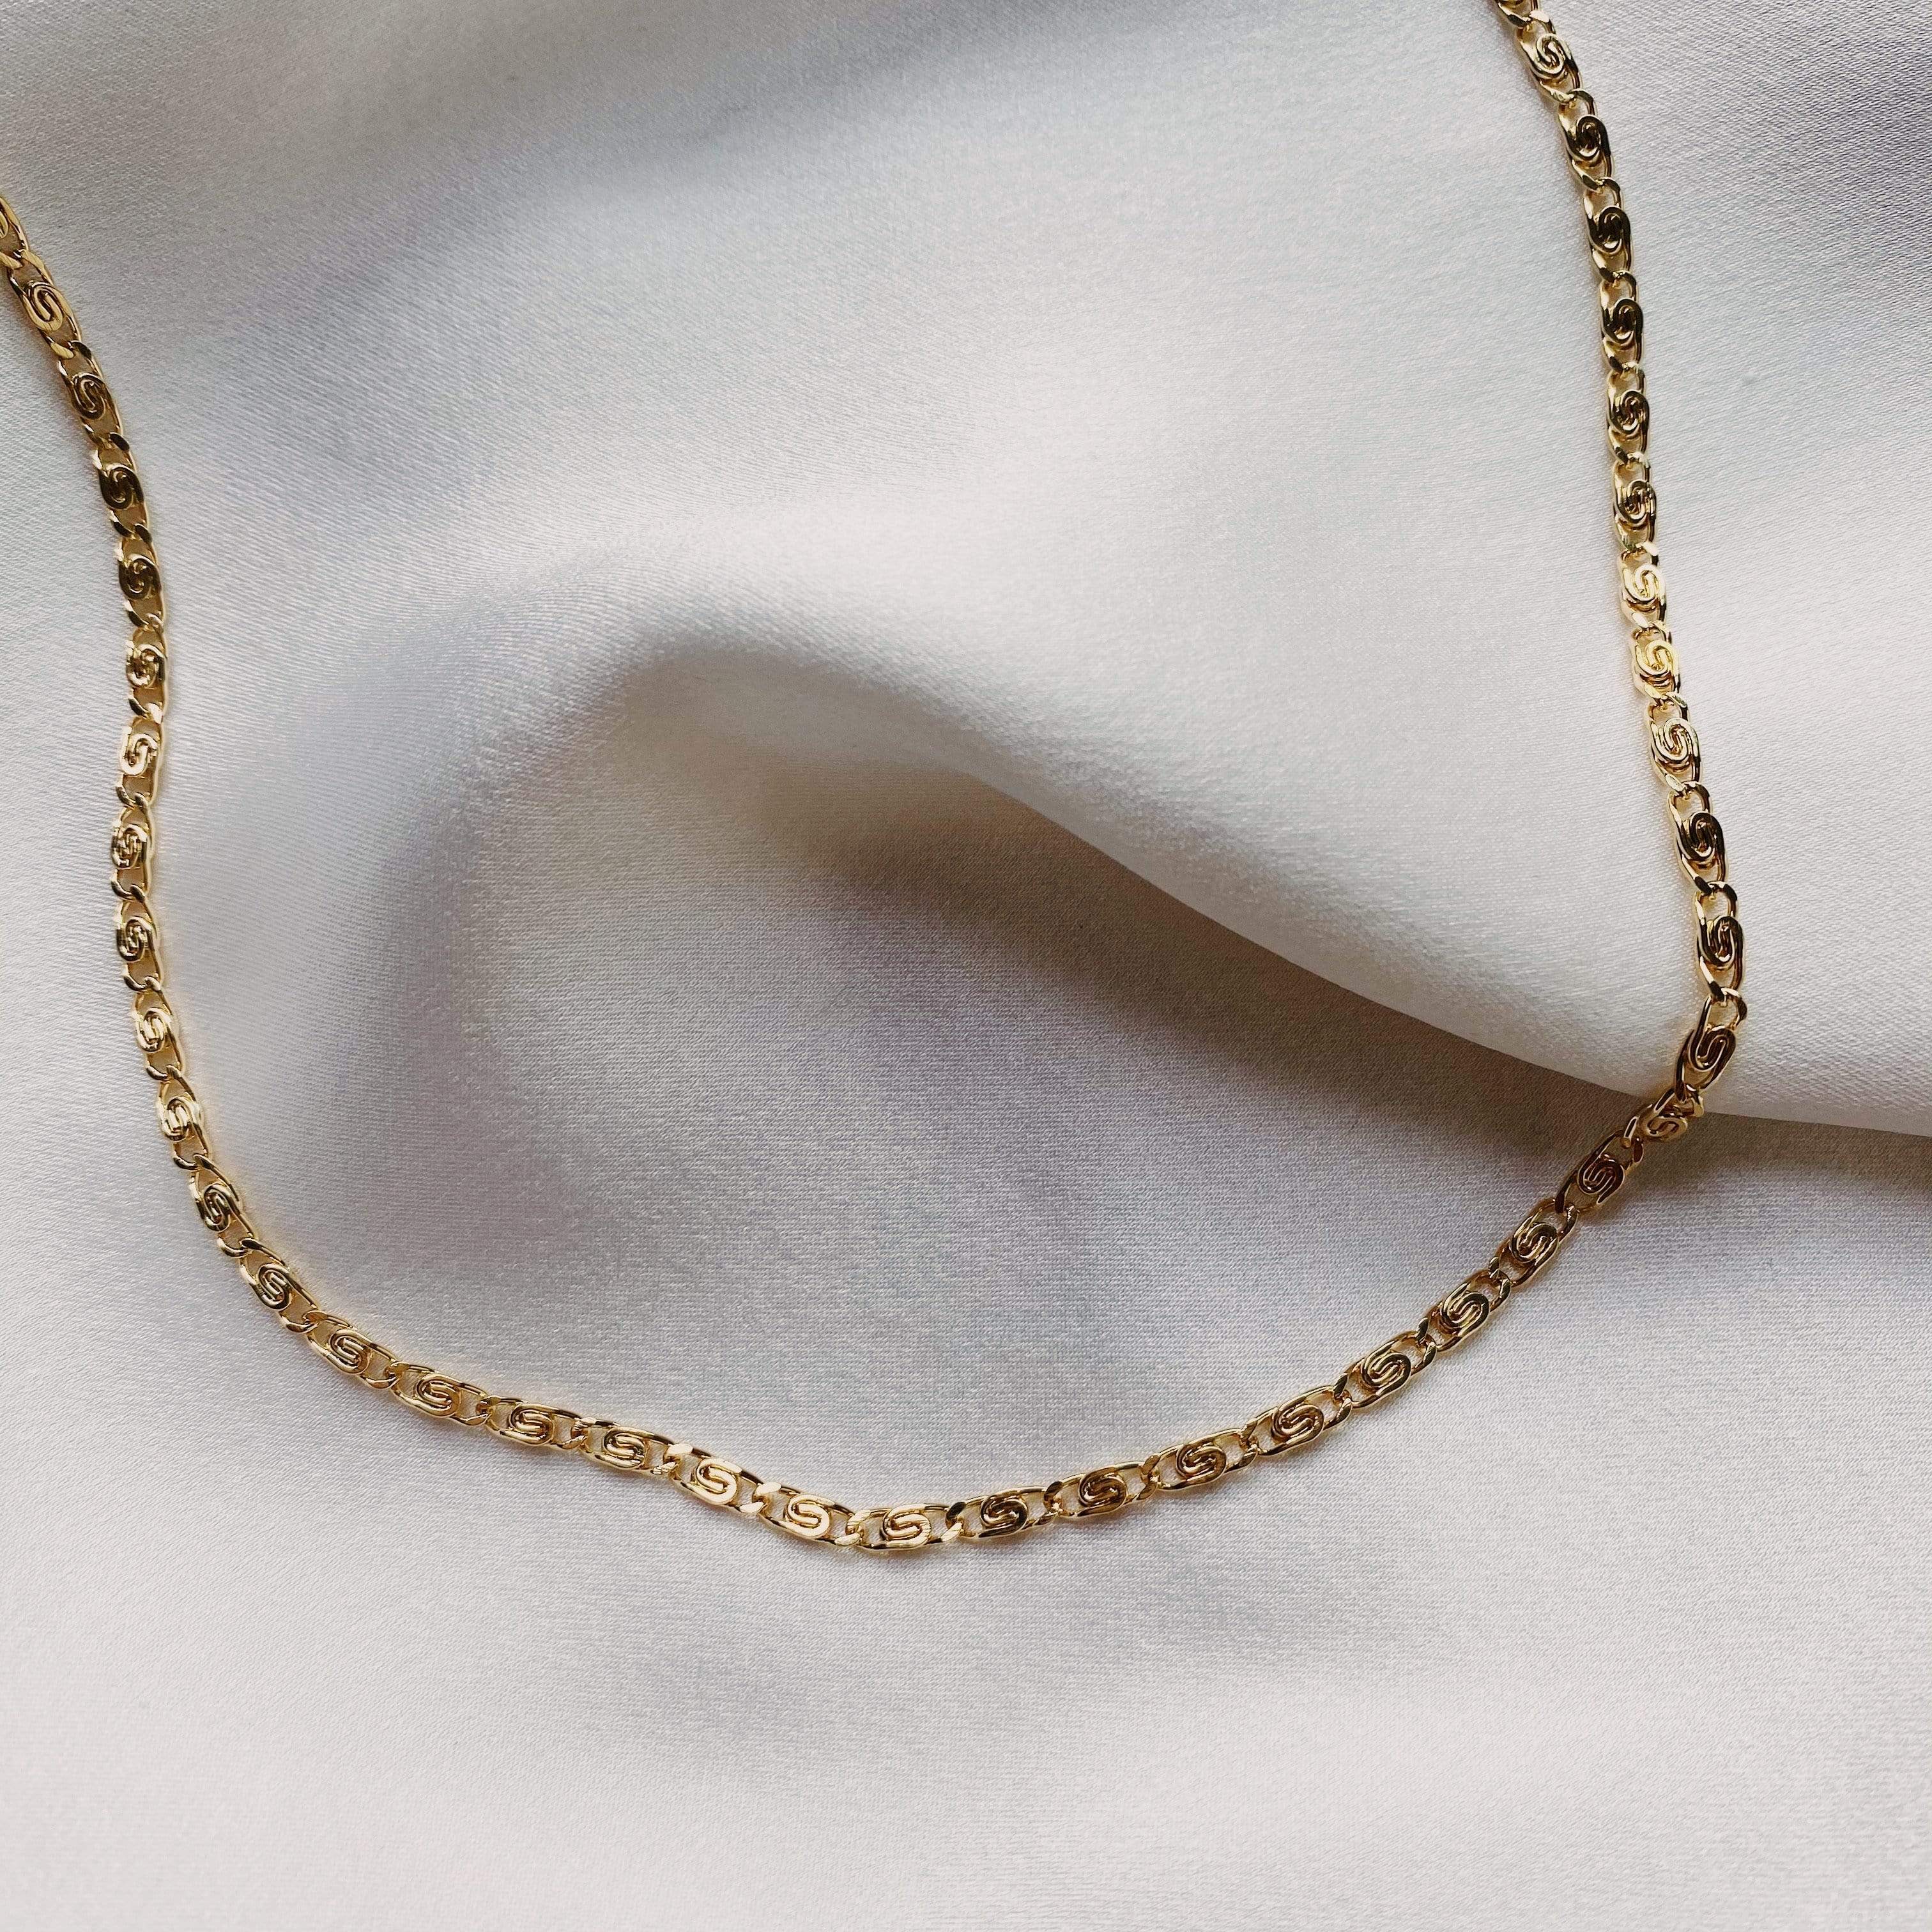 LE sensor necklace Shiloh Chain Necklace 20”